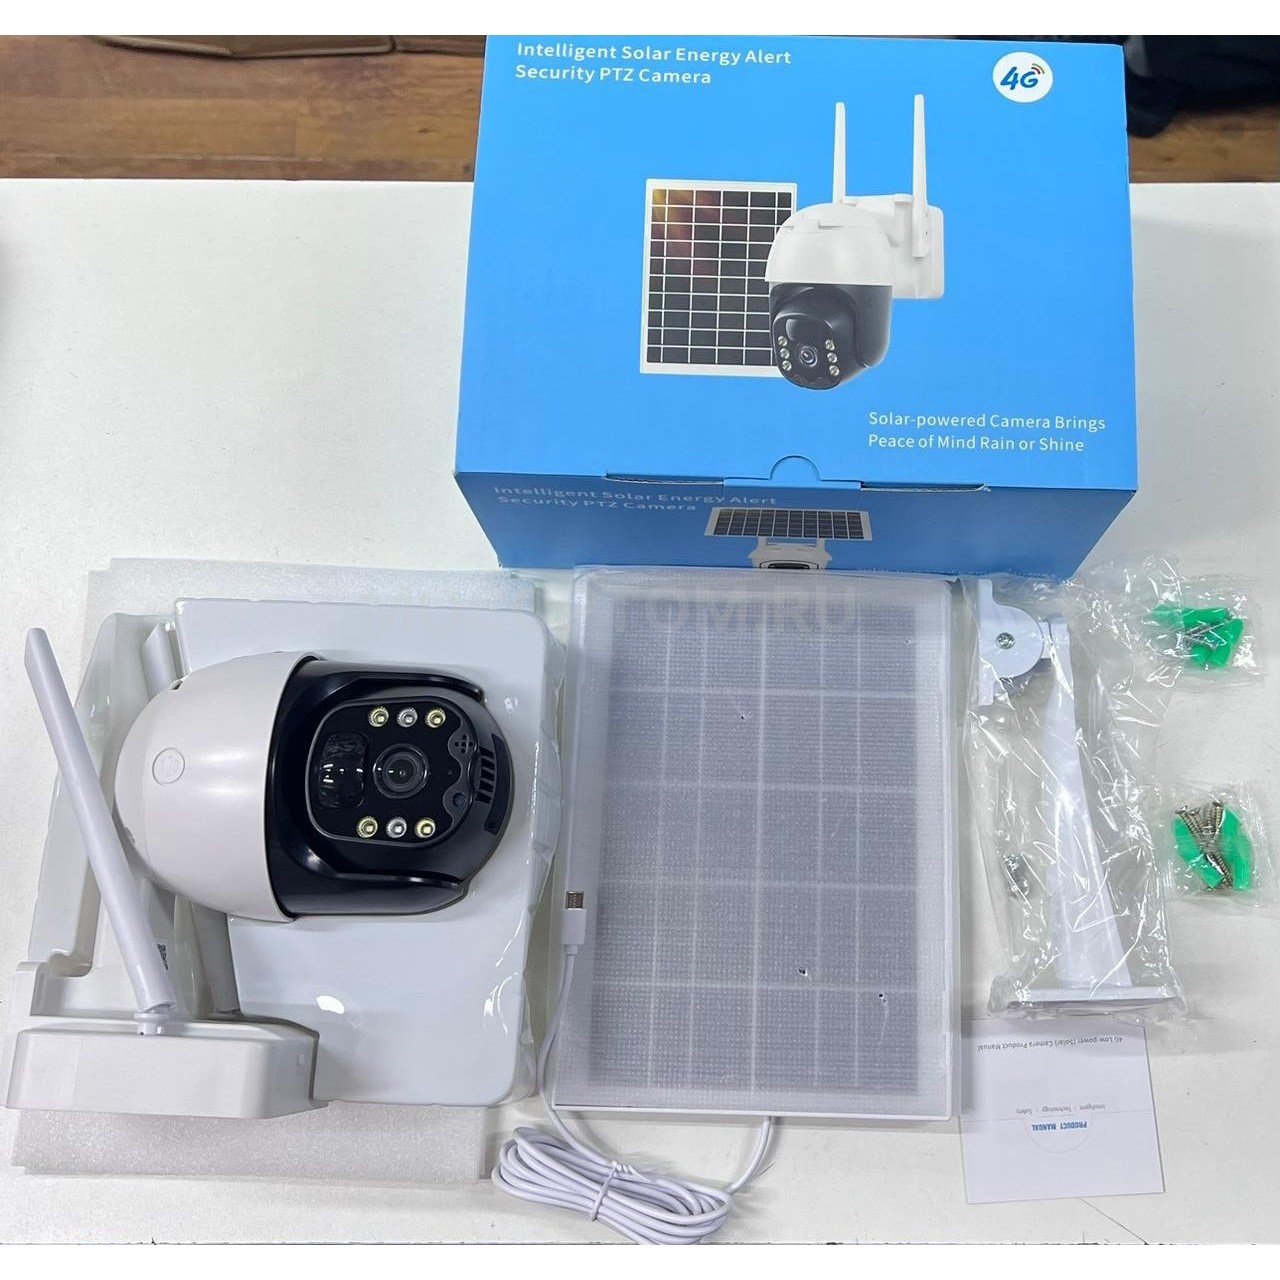 Беспроводная уличная камера видеонаблюдения на солнечной батарее Intelligent Solar Energy Alert Security PTZ Camera оптом